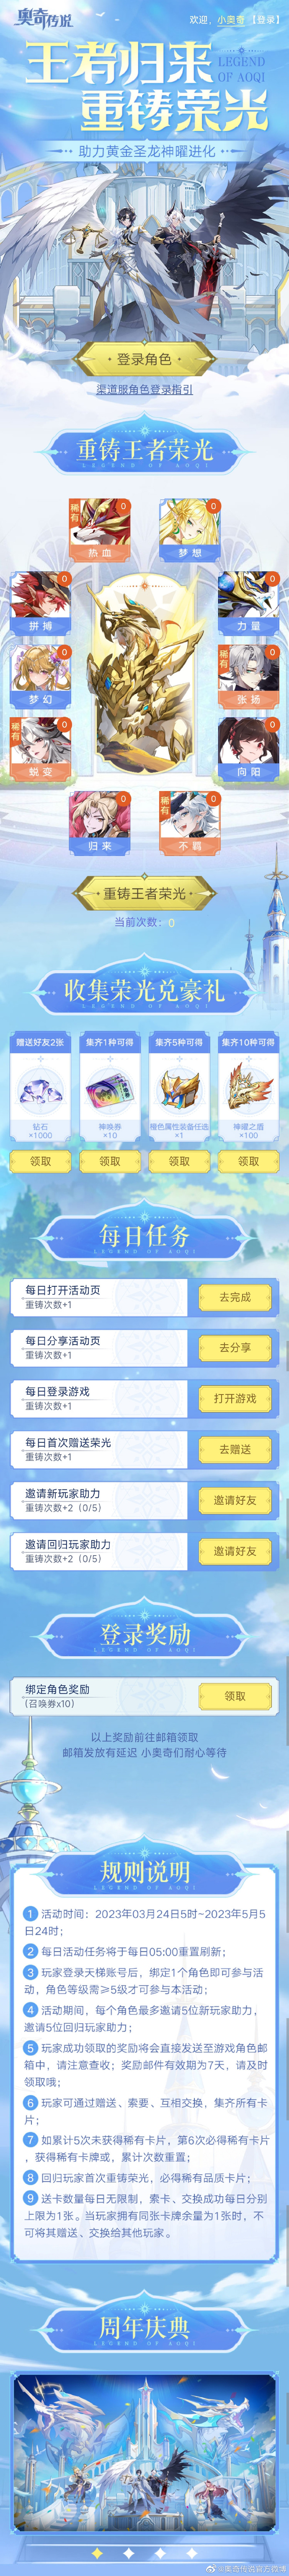 《奥奇传说》二周年庆典版本「神临曜世」PV上线